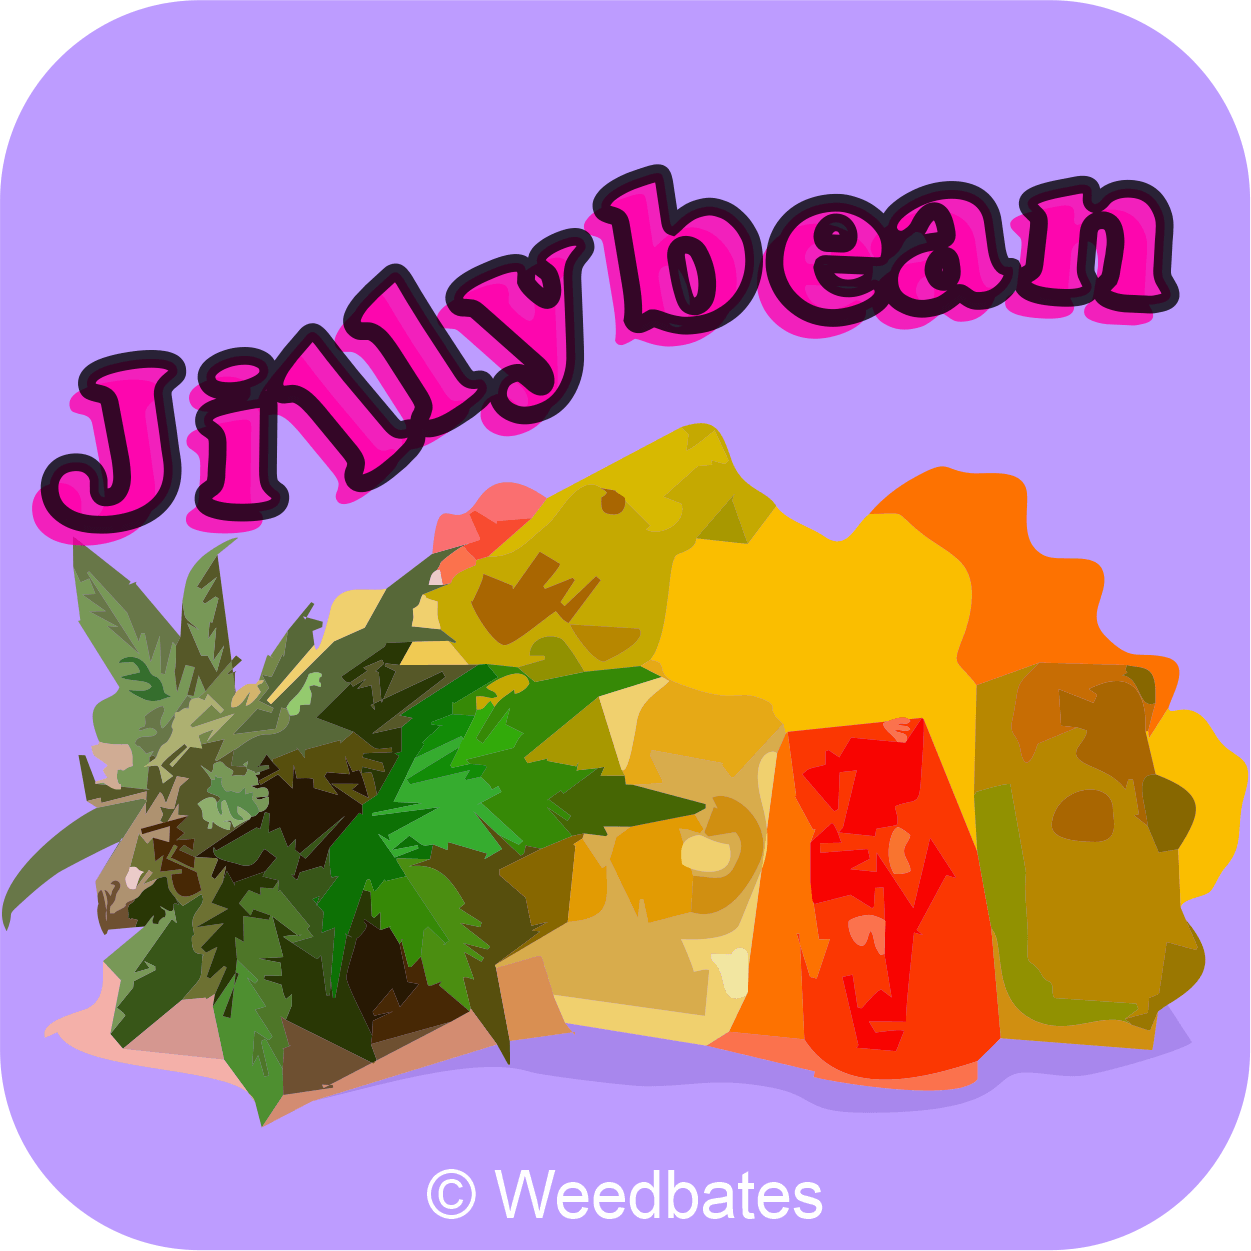 Jillybean cannabis strain